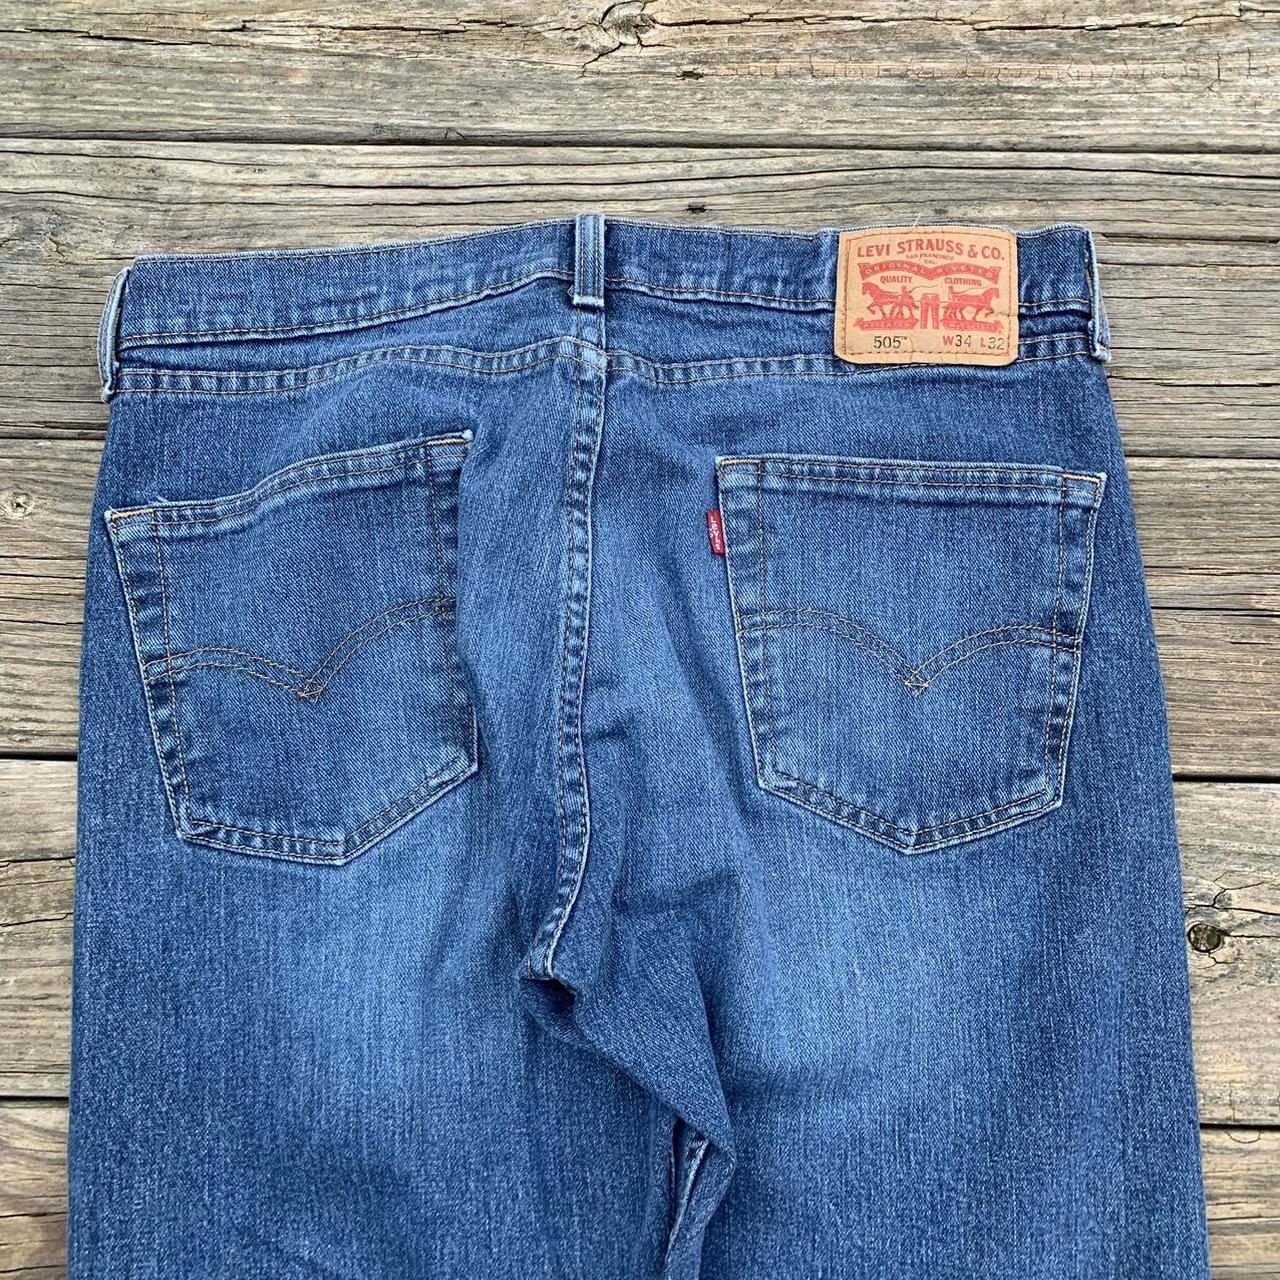 Vintage Levi 514 jeans measures to a 34W 32L ... - Depop